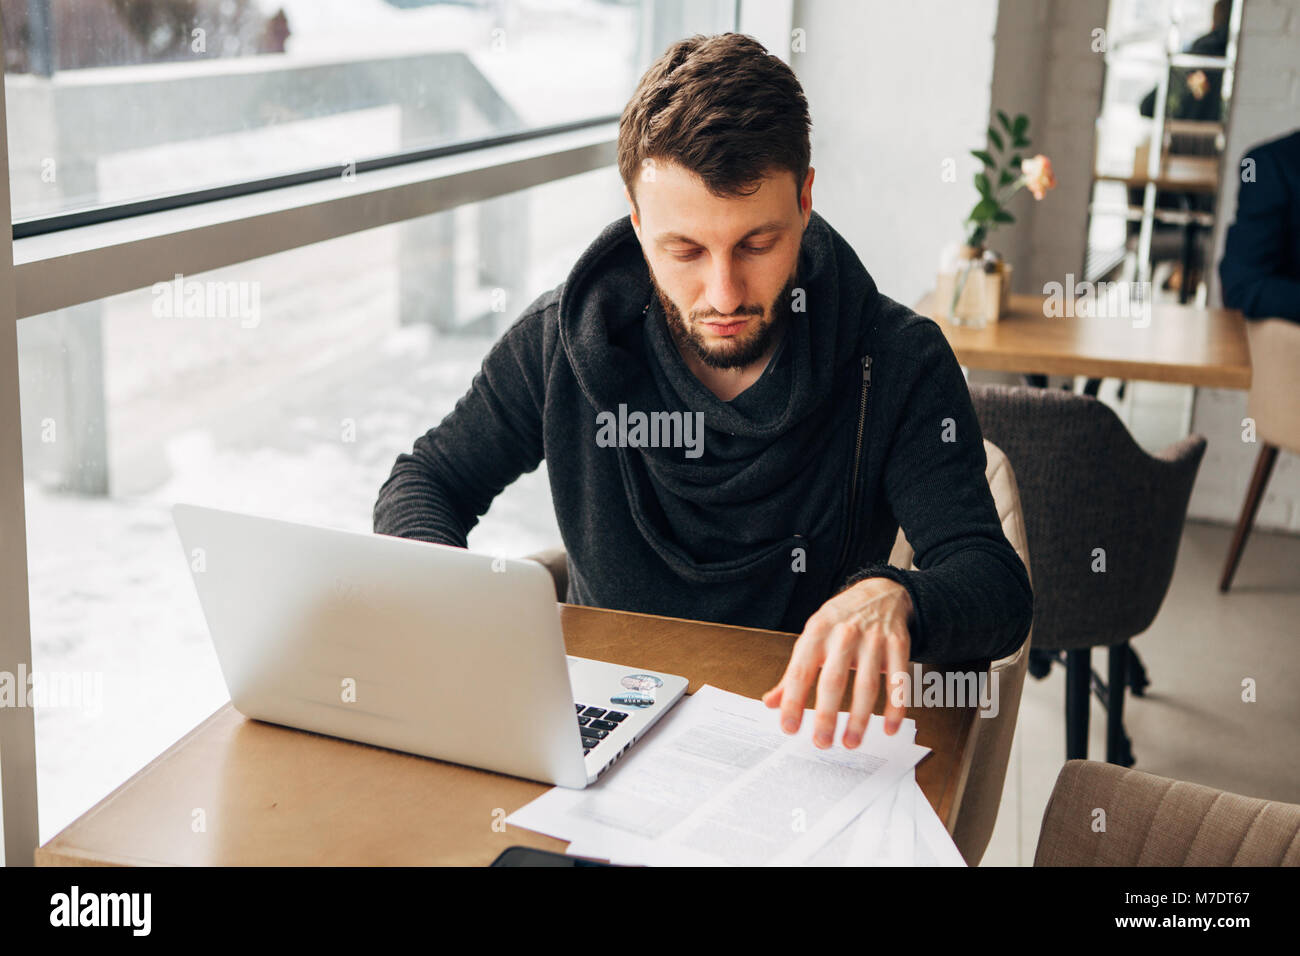 Un jeune homme travaille dans un café avec un ordinateur portable Banque D'Images